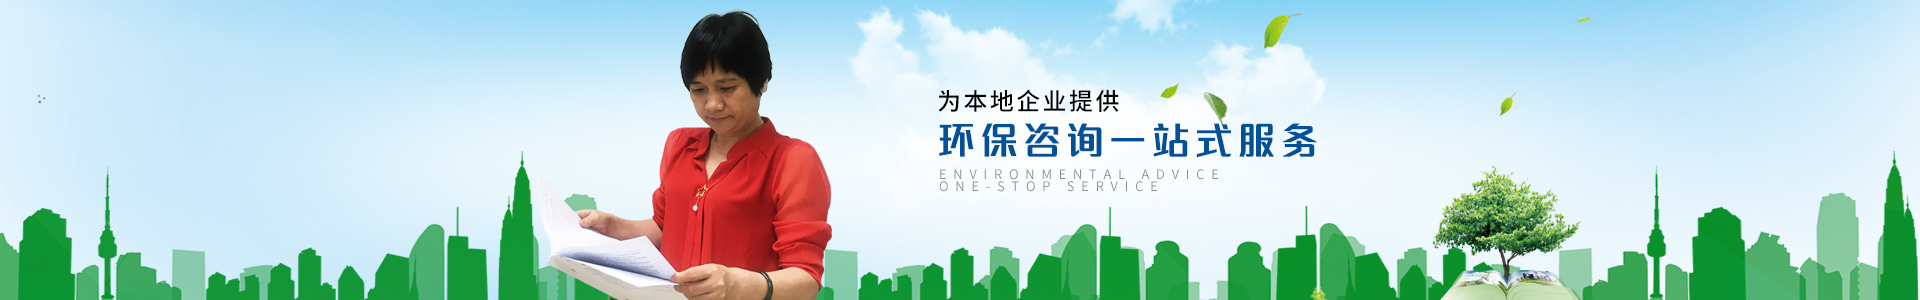 墺林-为本地企业提供环保咨询一站式服务